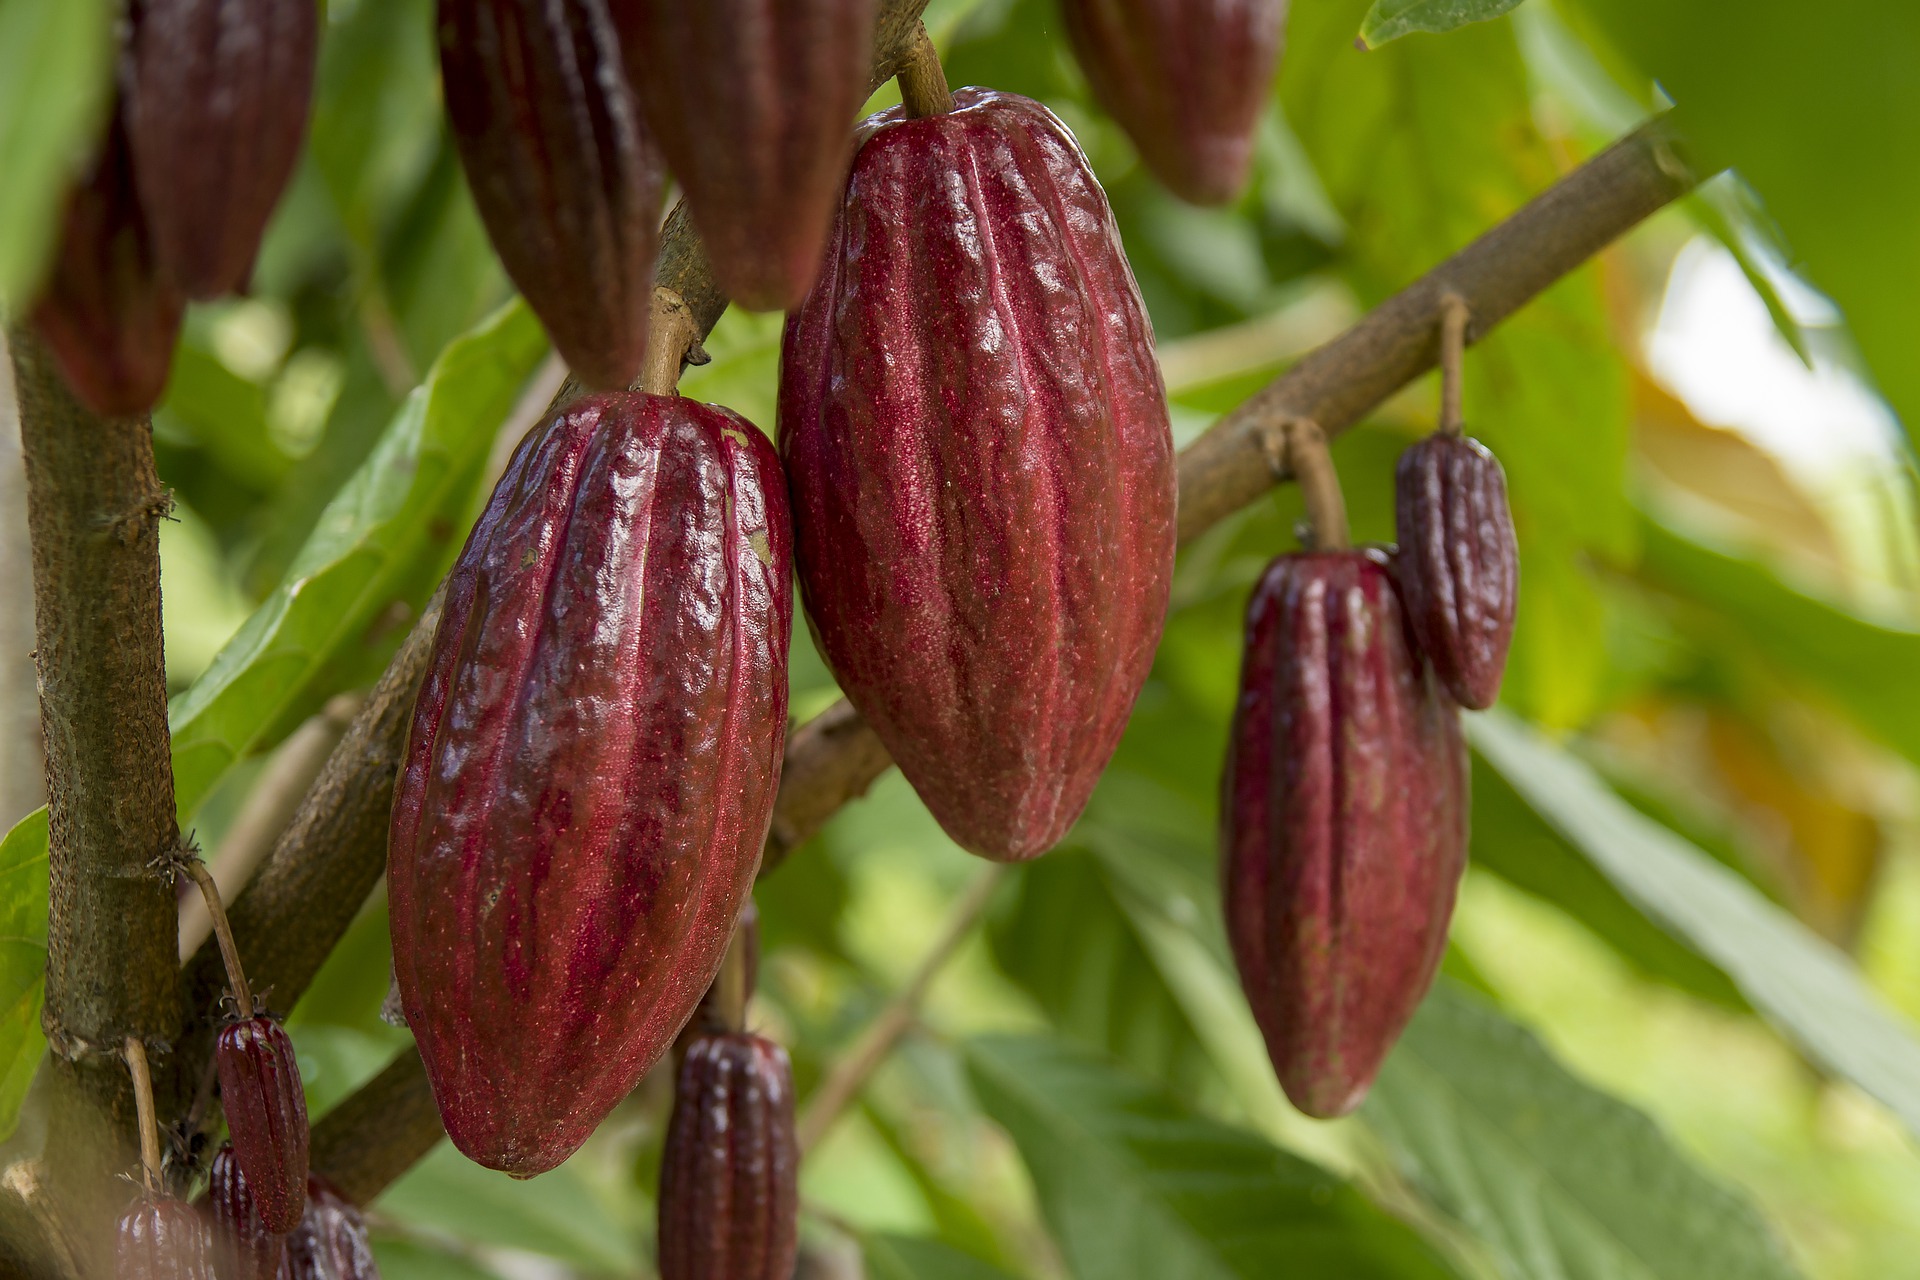 Agrocuriosidades: El cultivo y aprovechamiento del cacao